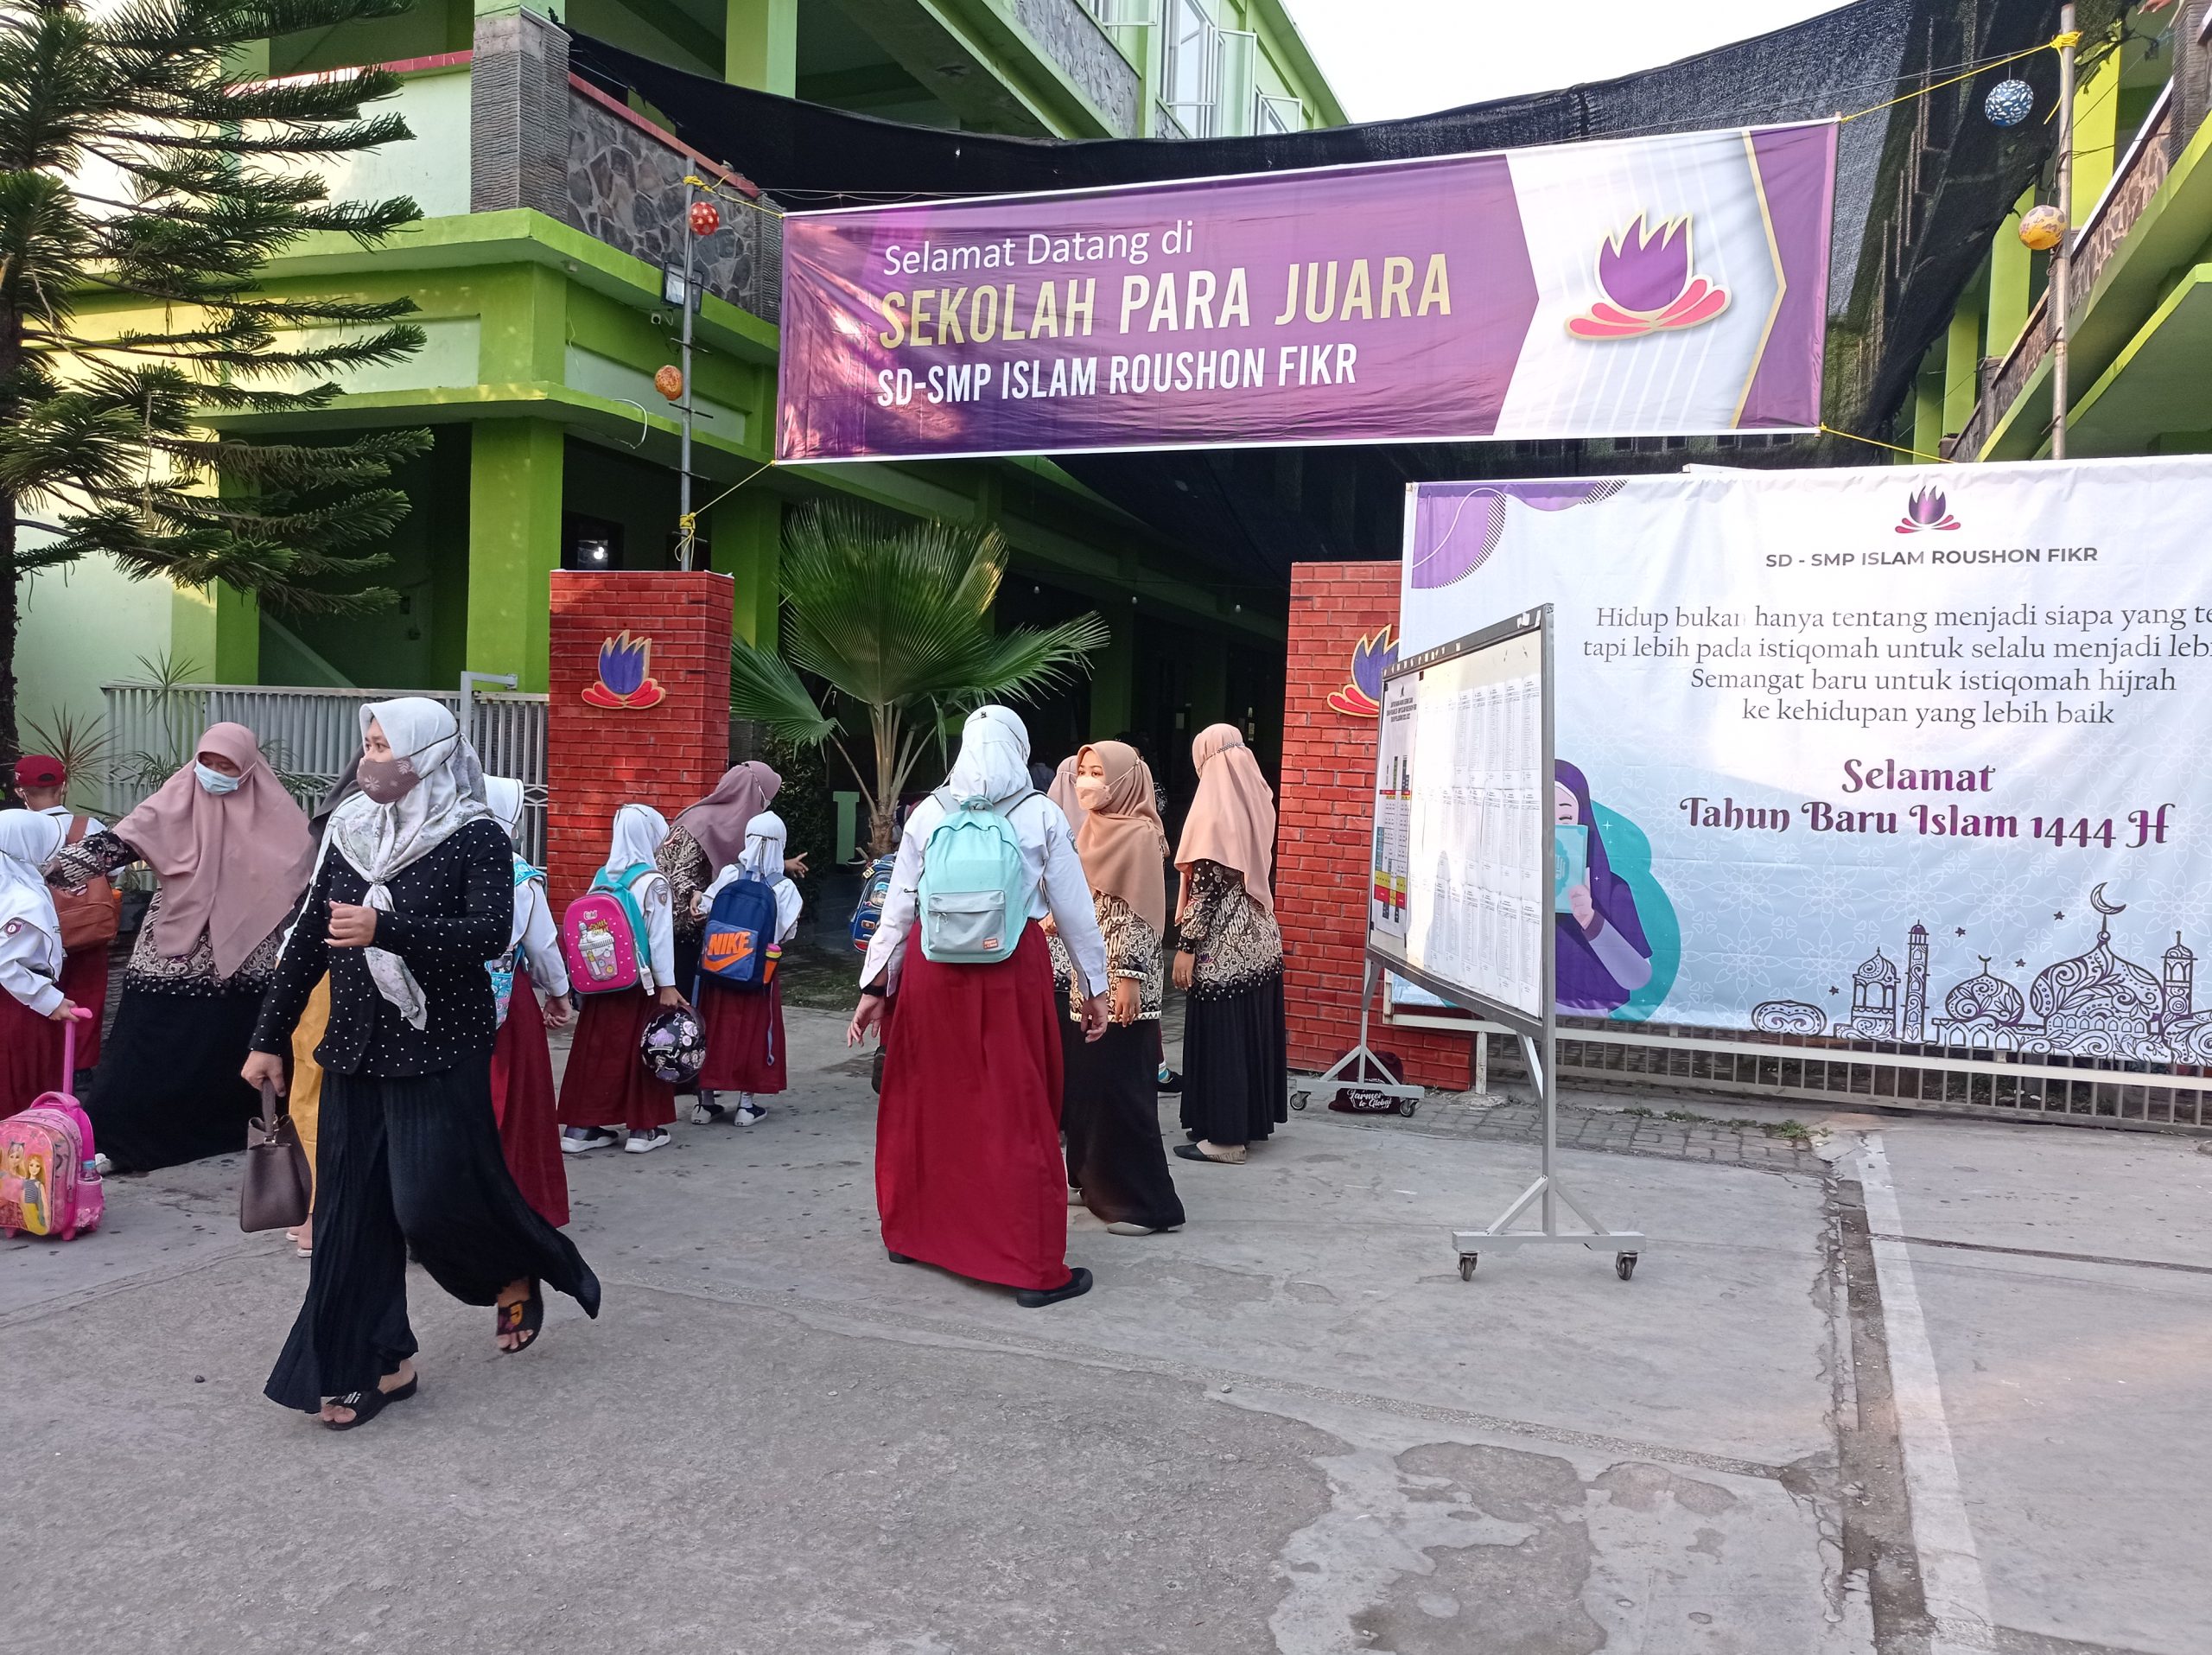 Foto: Dokumentasi SD Islam Roushon Fikr Di Jombang Tetap Mentaati Protokol Kesehatan. Terlihat hari Pertama Masuk Sekolah disiplin dalam menjaga protokol kesehatan (Suara Utama ID).